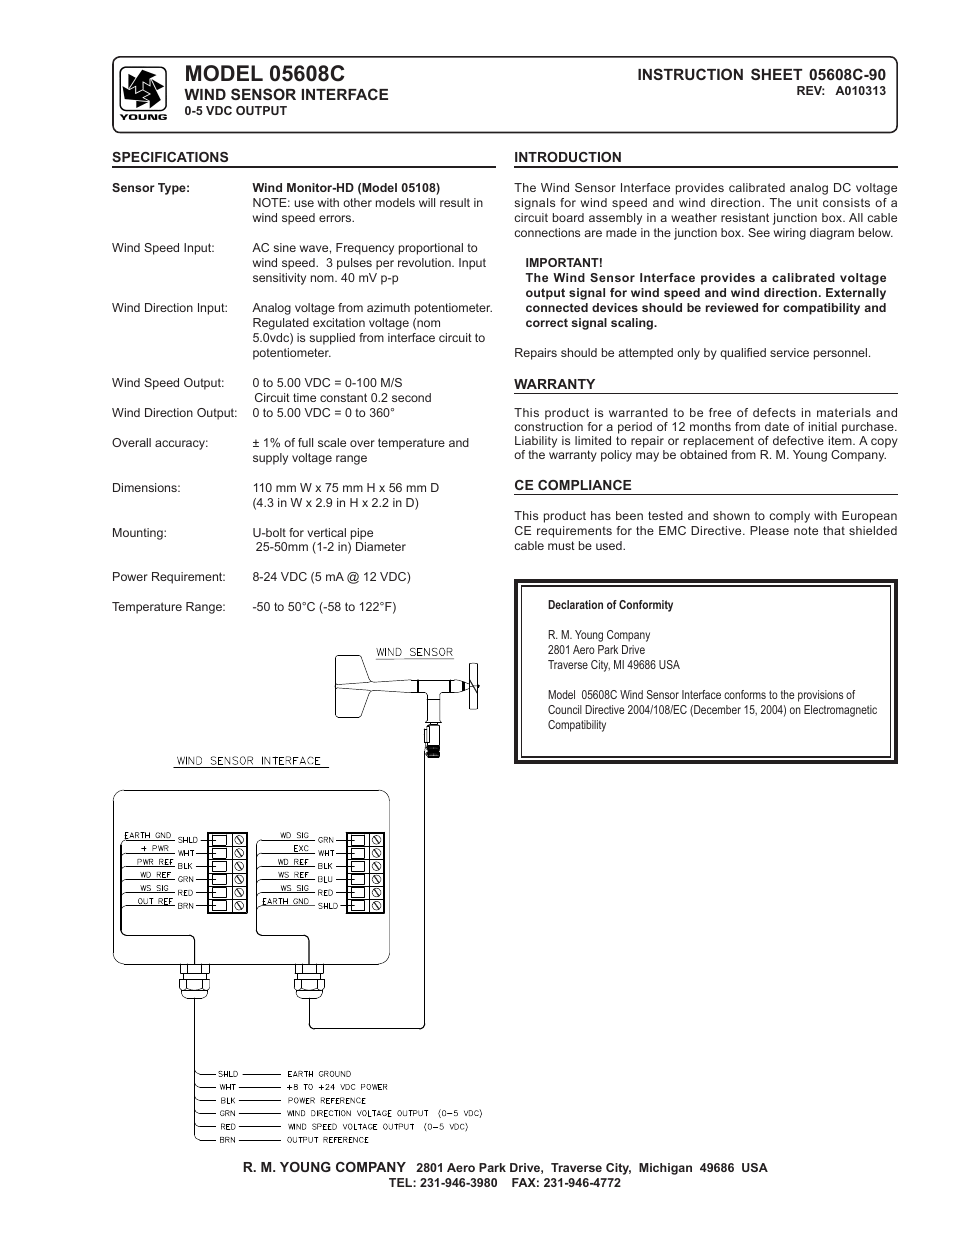 Voltage & Current Interfaces 05608C